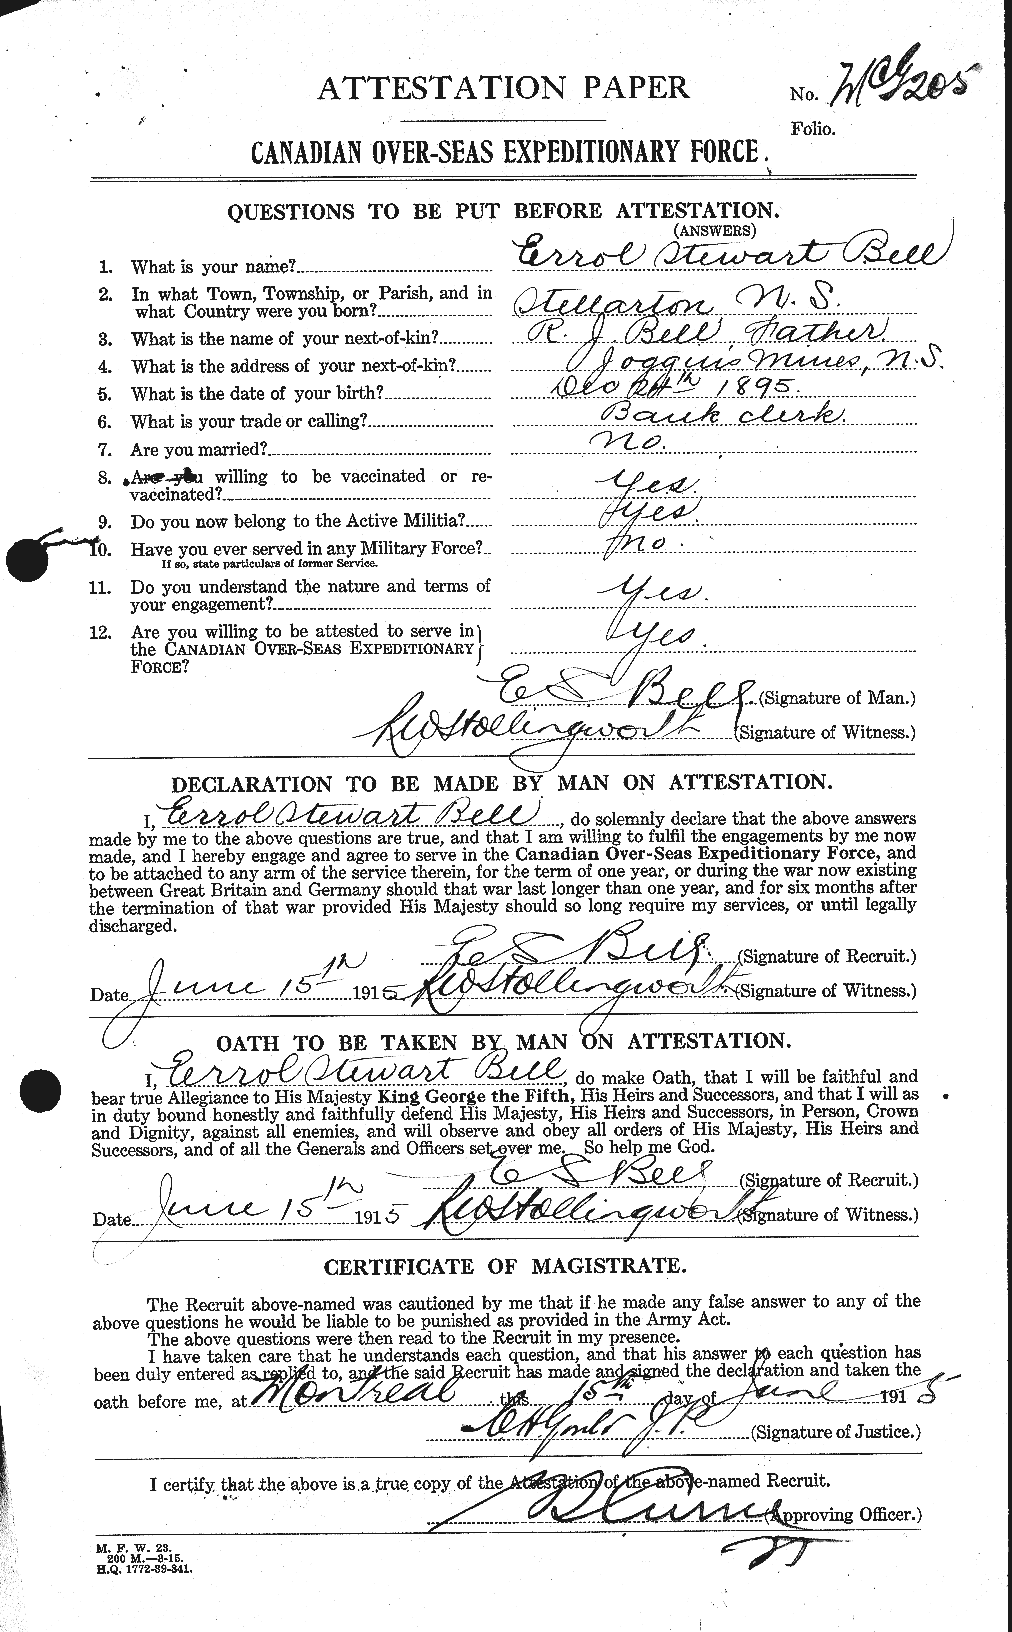 Dossiers du Personnel de la Première Guerre mondiale - CEC 234077a